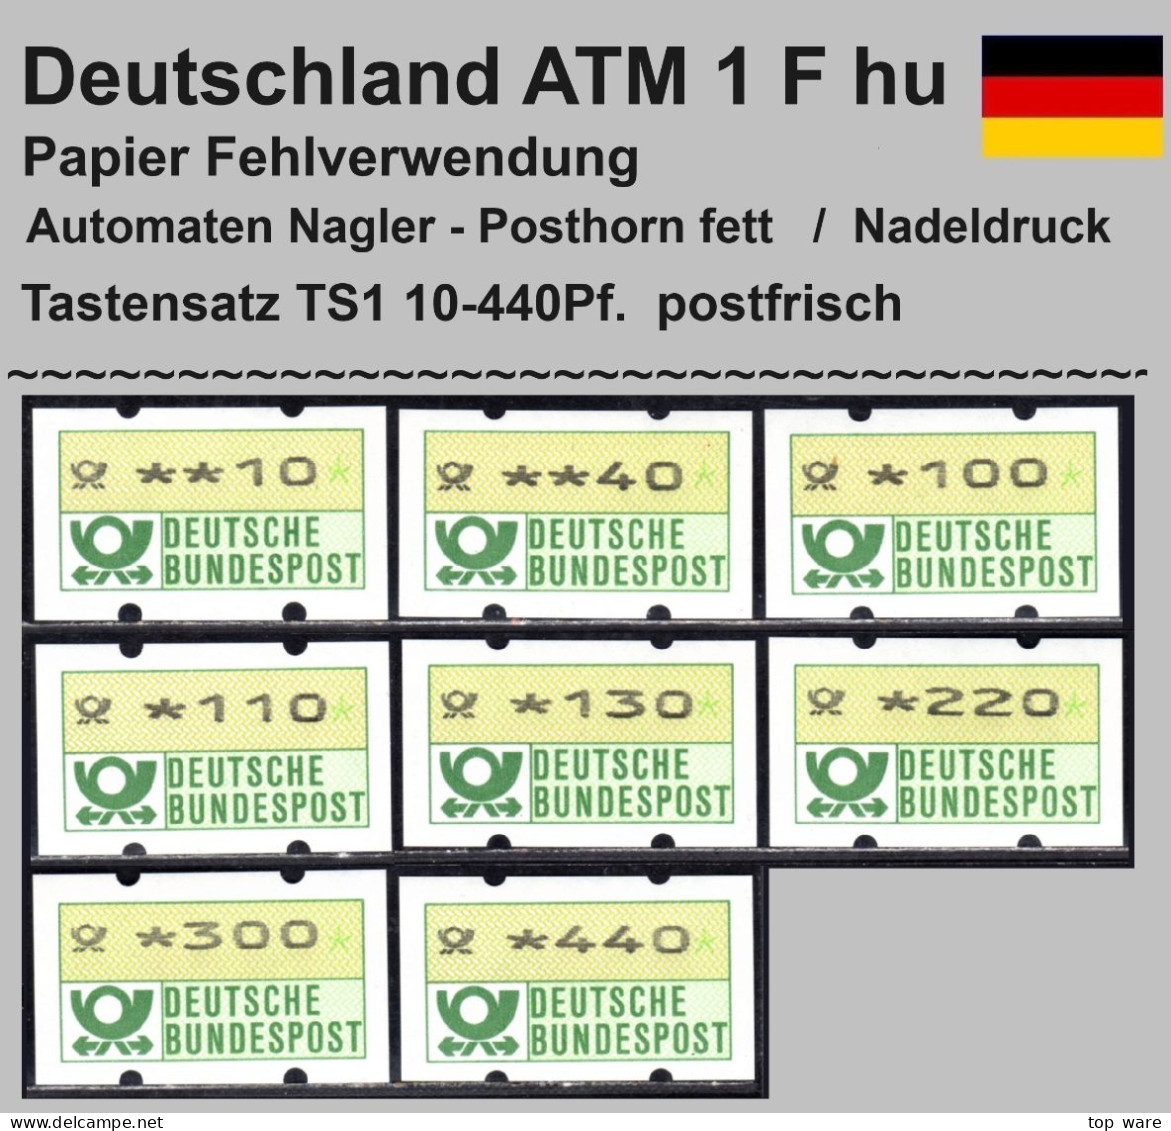 Deutschland Bund ATM 1 F Hu / Fehlverwendung Nagler Posthornaufdruck Tastensatz TS1 Postfrisch - Timbres De Distributeurs [ATM]